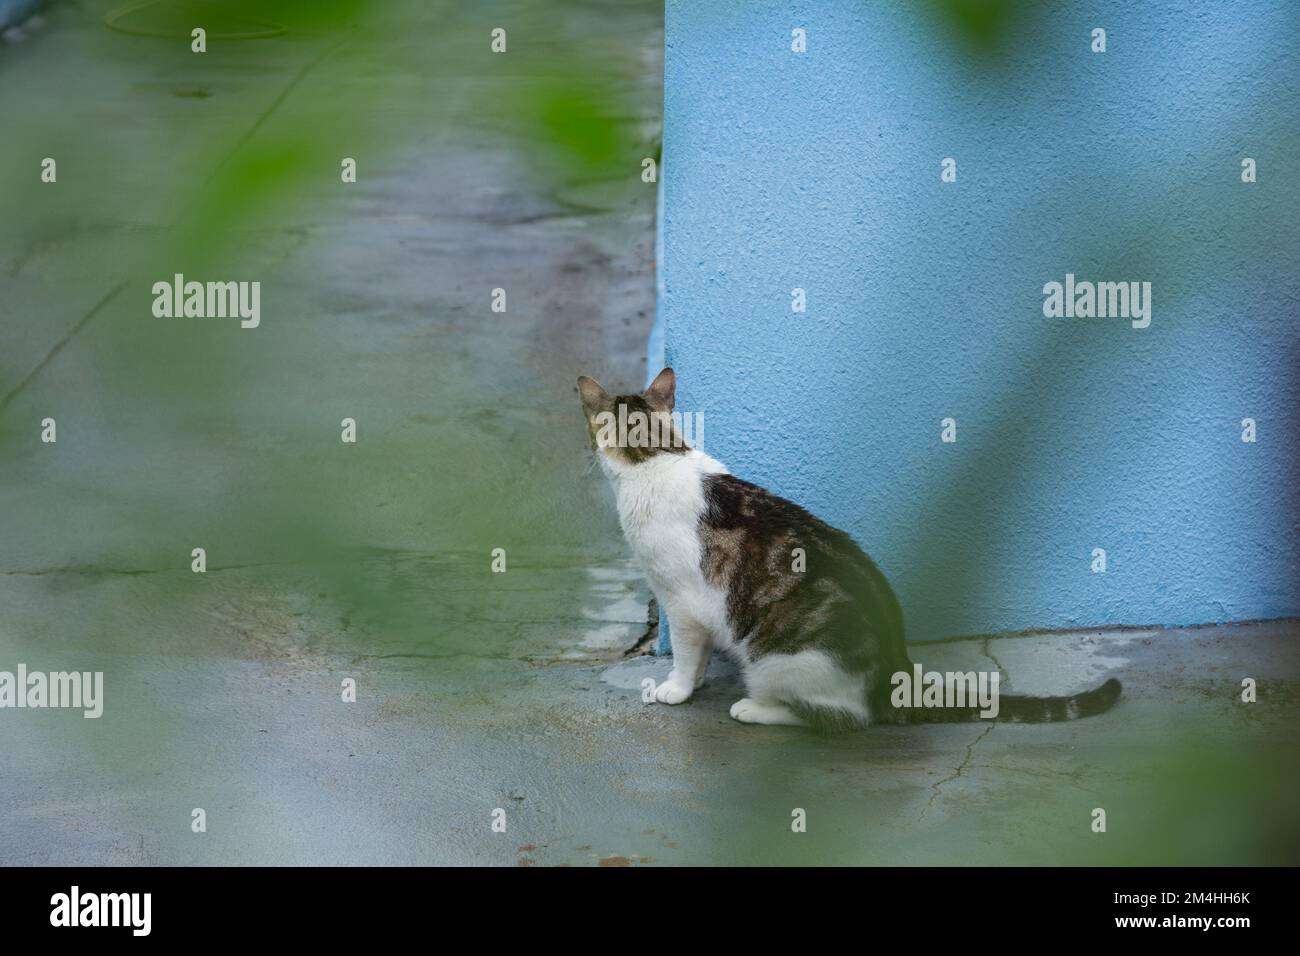 Goiania, Goiás, Brasilien – 20. Dezember 2022: Eine Katze, die hinter der blauen Mauer auf dem Betonboden sitzt und durch die Blätter eines Baumes gesehen wird Stockfoto